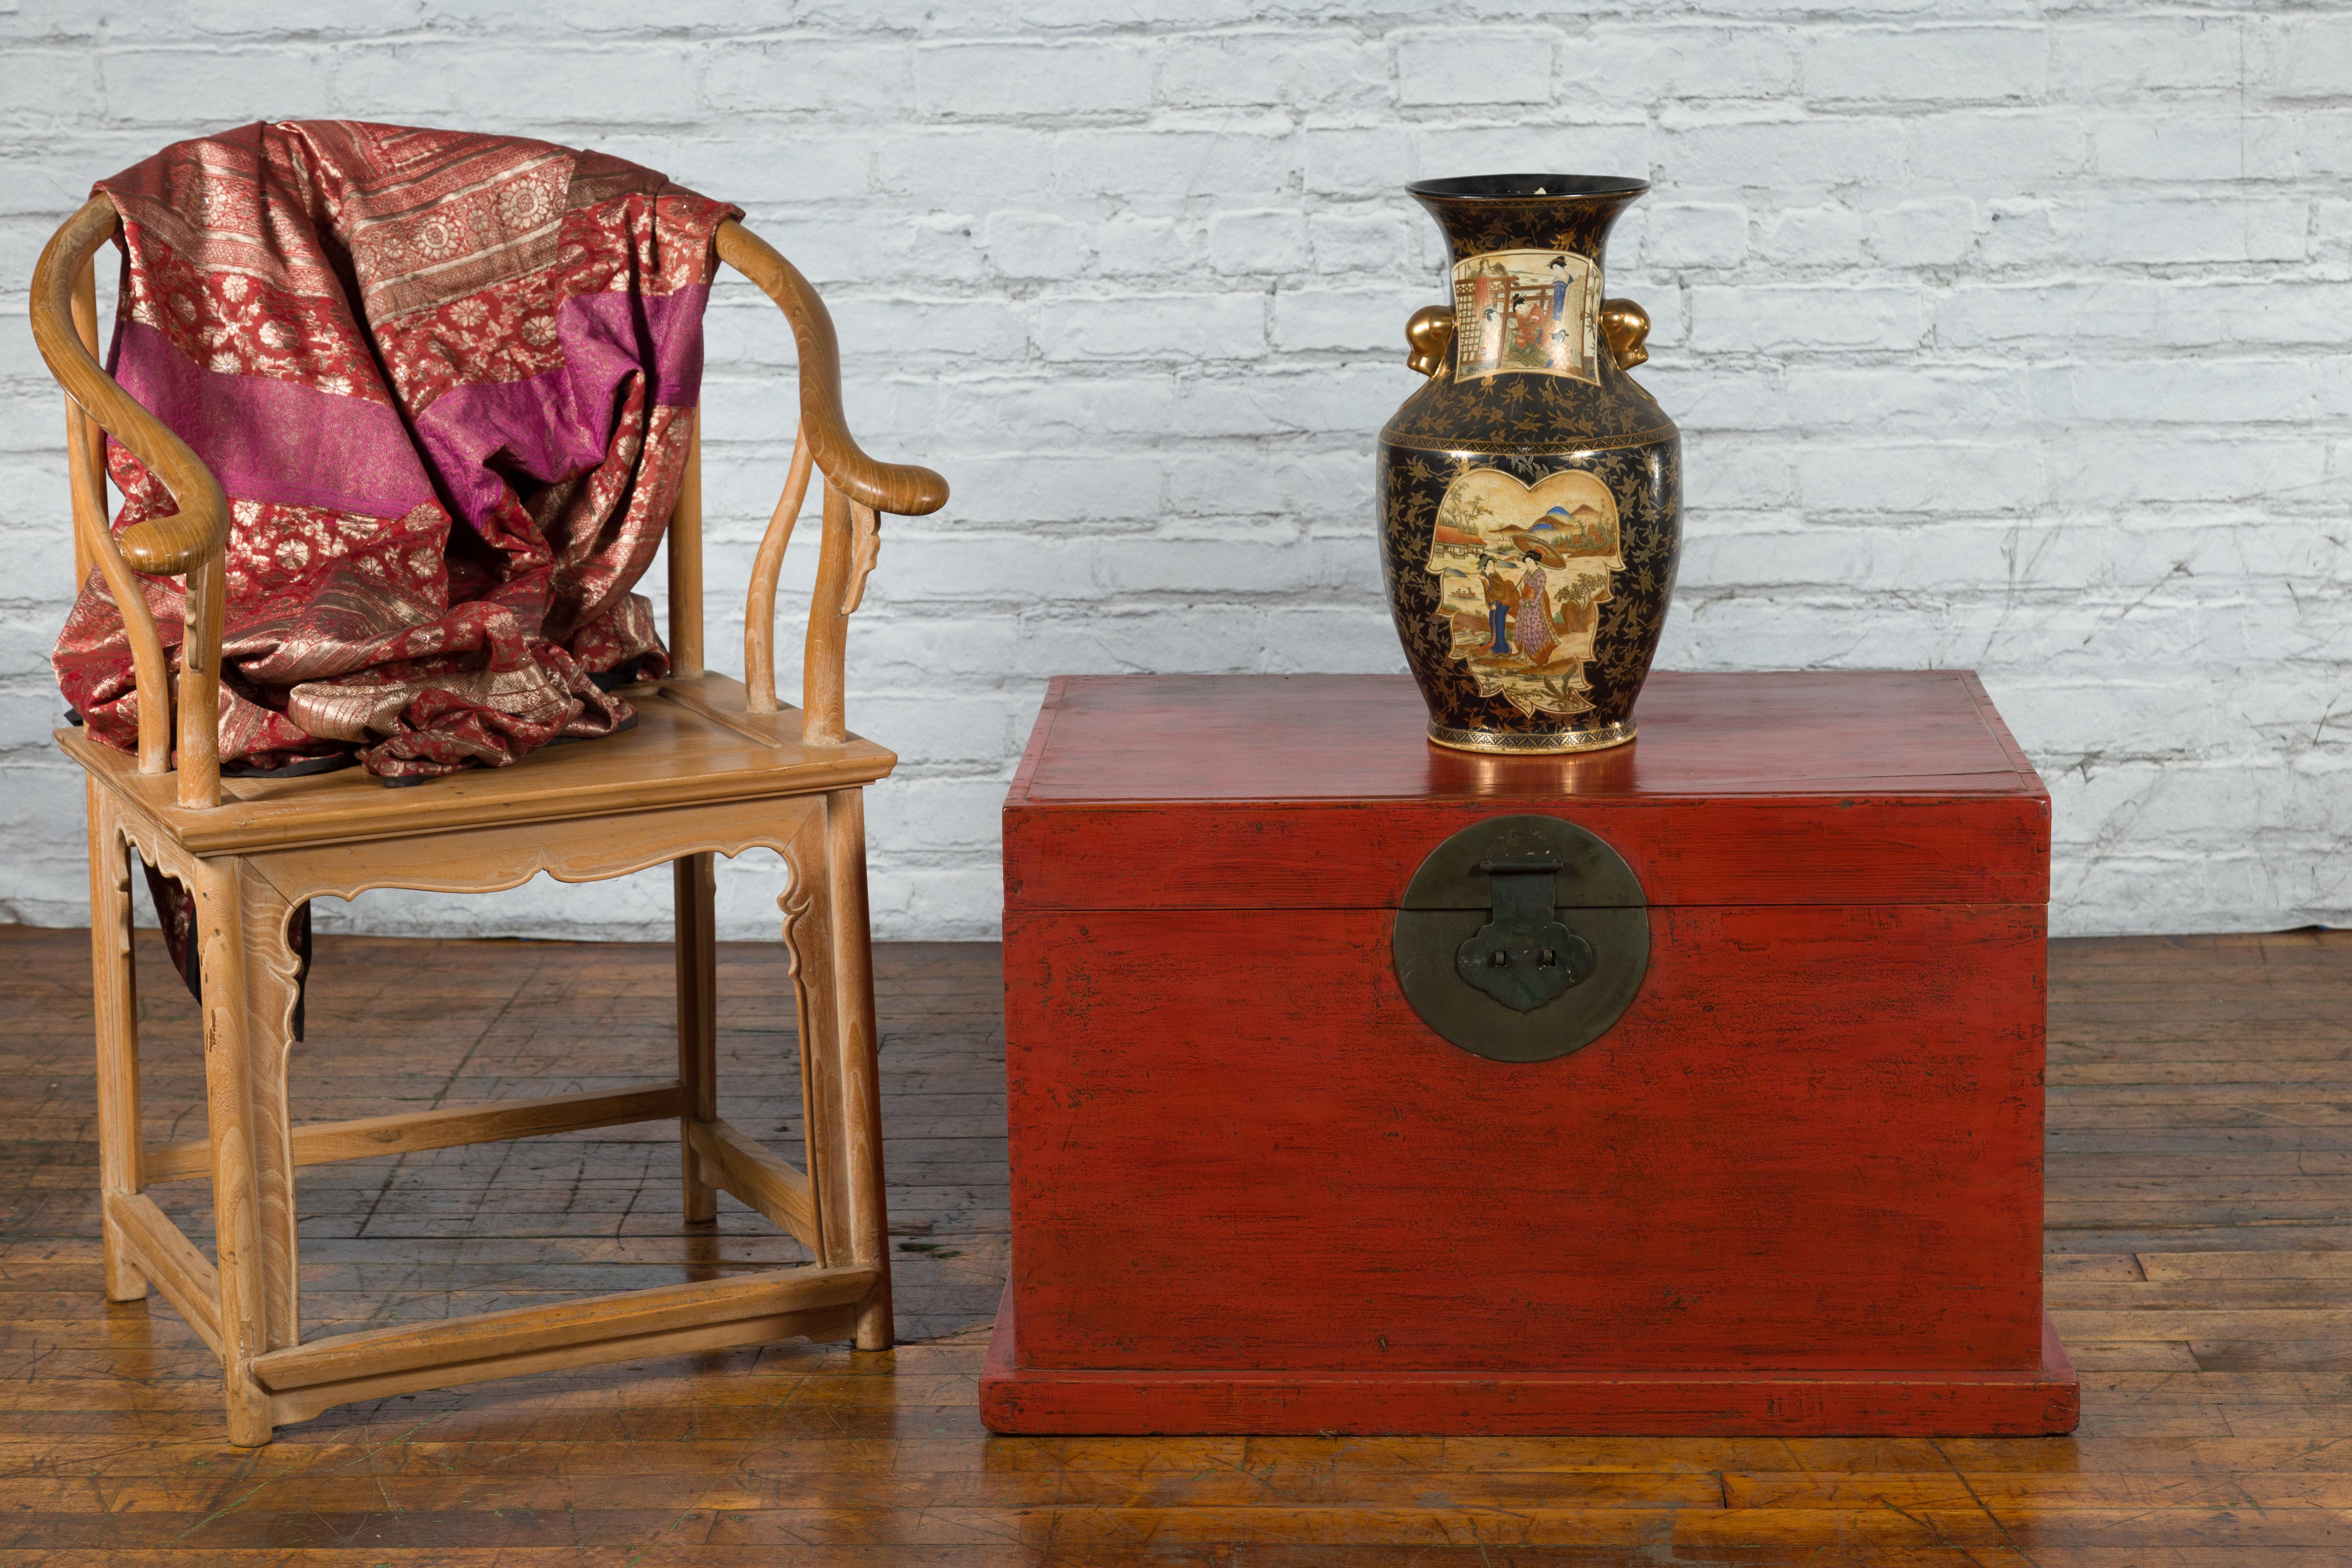 Un coffre en laque rouge de la période de la dynastie chinoise Qing du 19e siècle, avec des ferrures métalliques rondes. Créé en Chine au cours du XIXe siècle, ce coffre laqué rouge présente un couvercle rectangulaire s'ouvrant sur un verrou